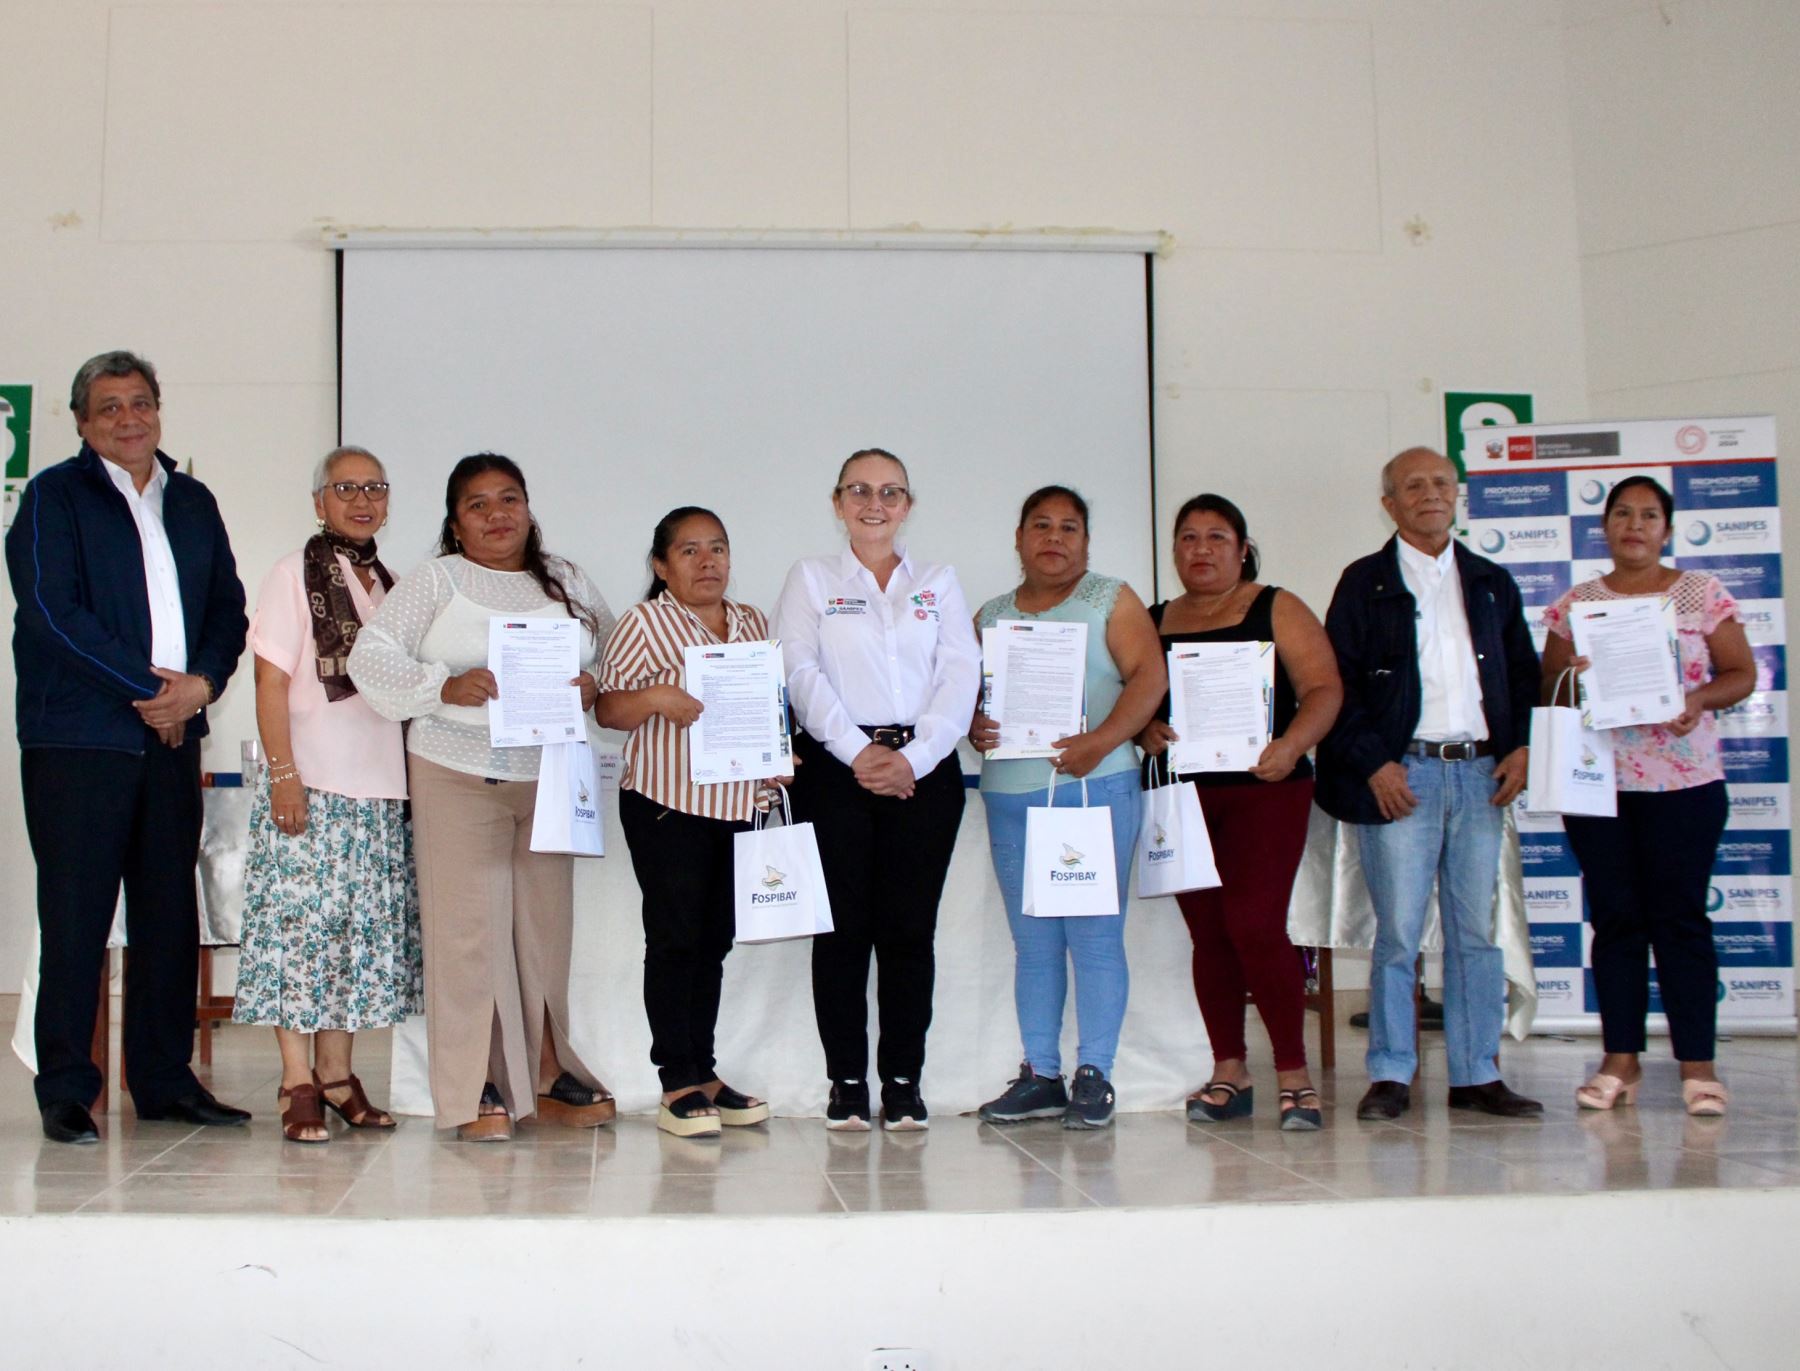 Sanipes entregó titulo de habilitación sanitaria a 25 mujeres armadoras de embarcaciones artesanales de Sechura, en Piura.